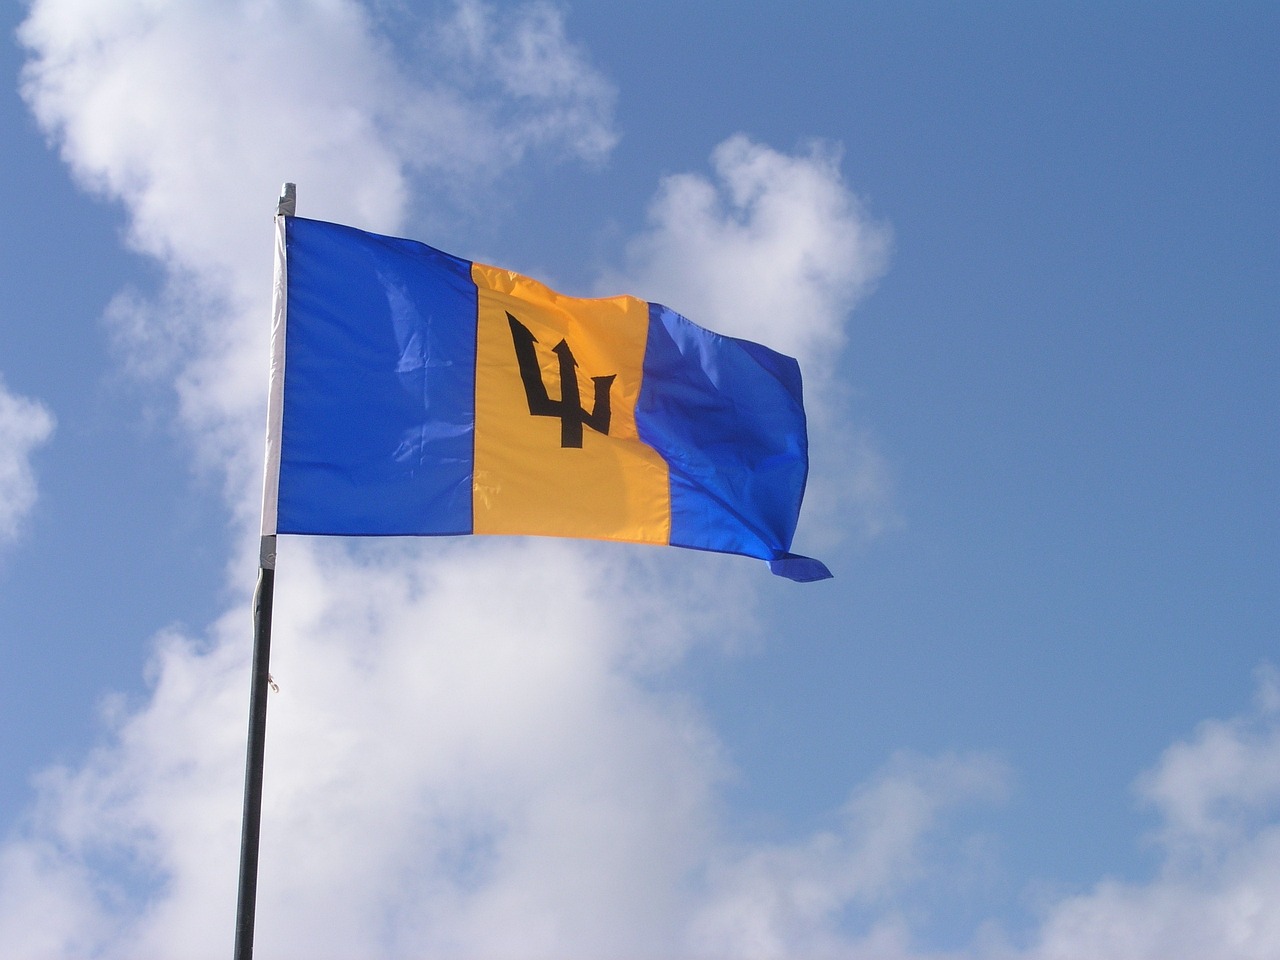 Flag of Barbados (photo credit: sbj04769 via pixabay)